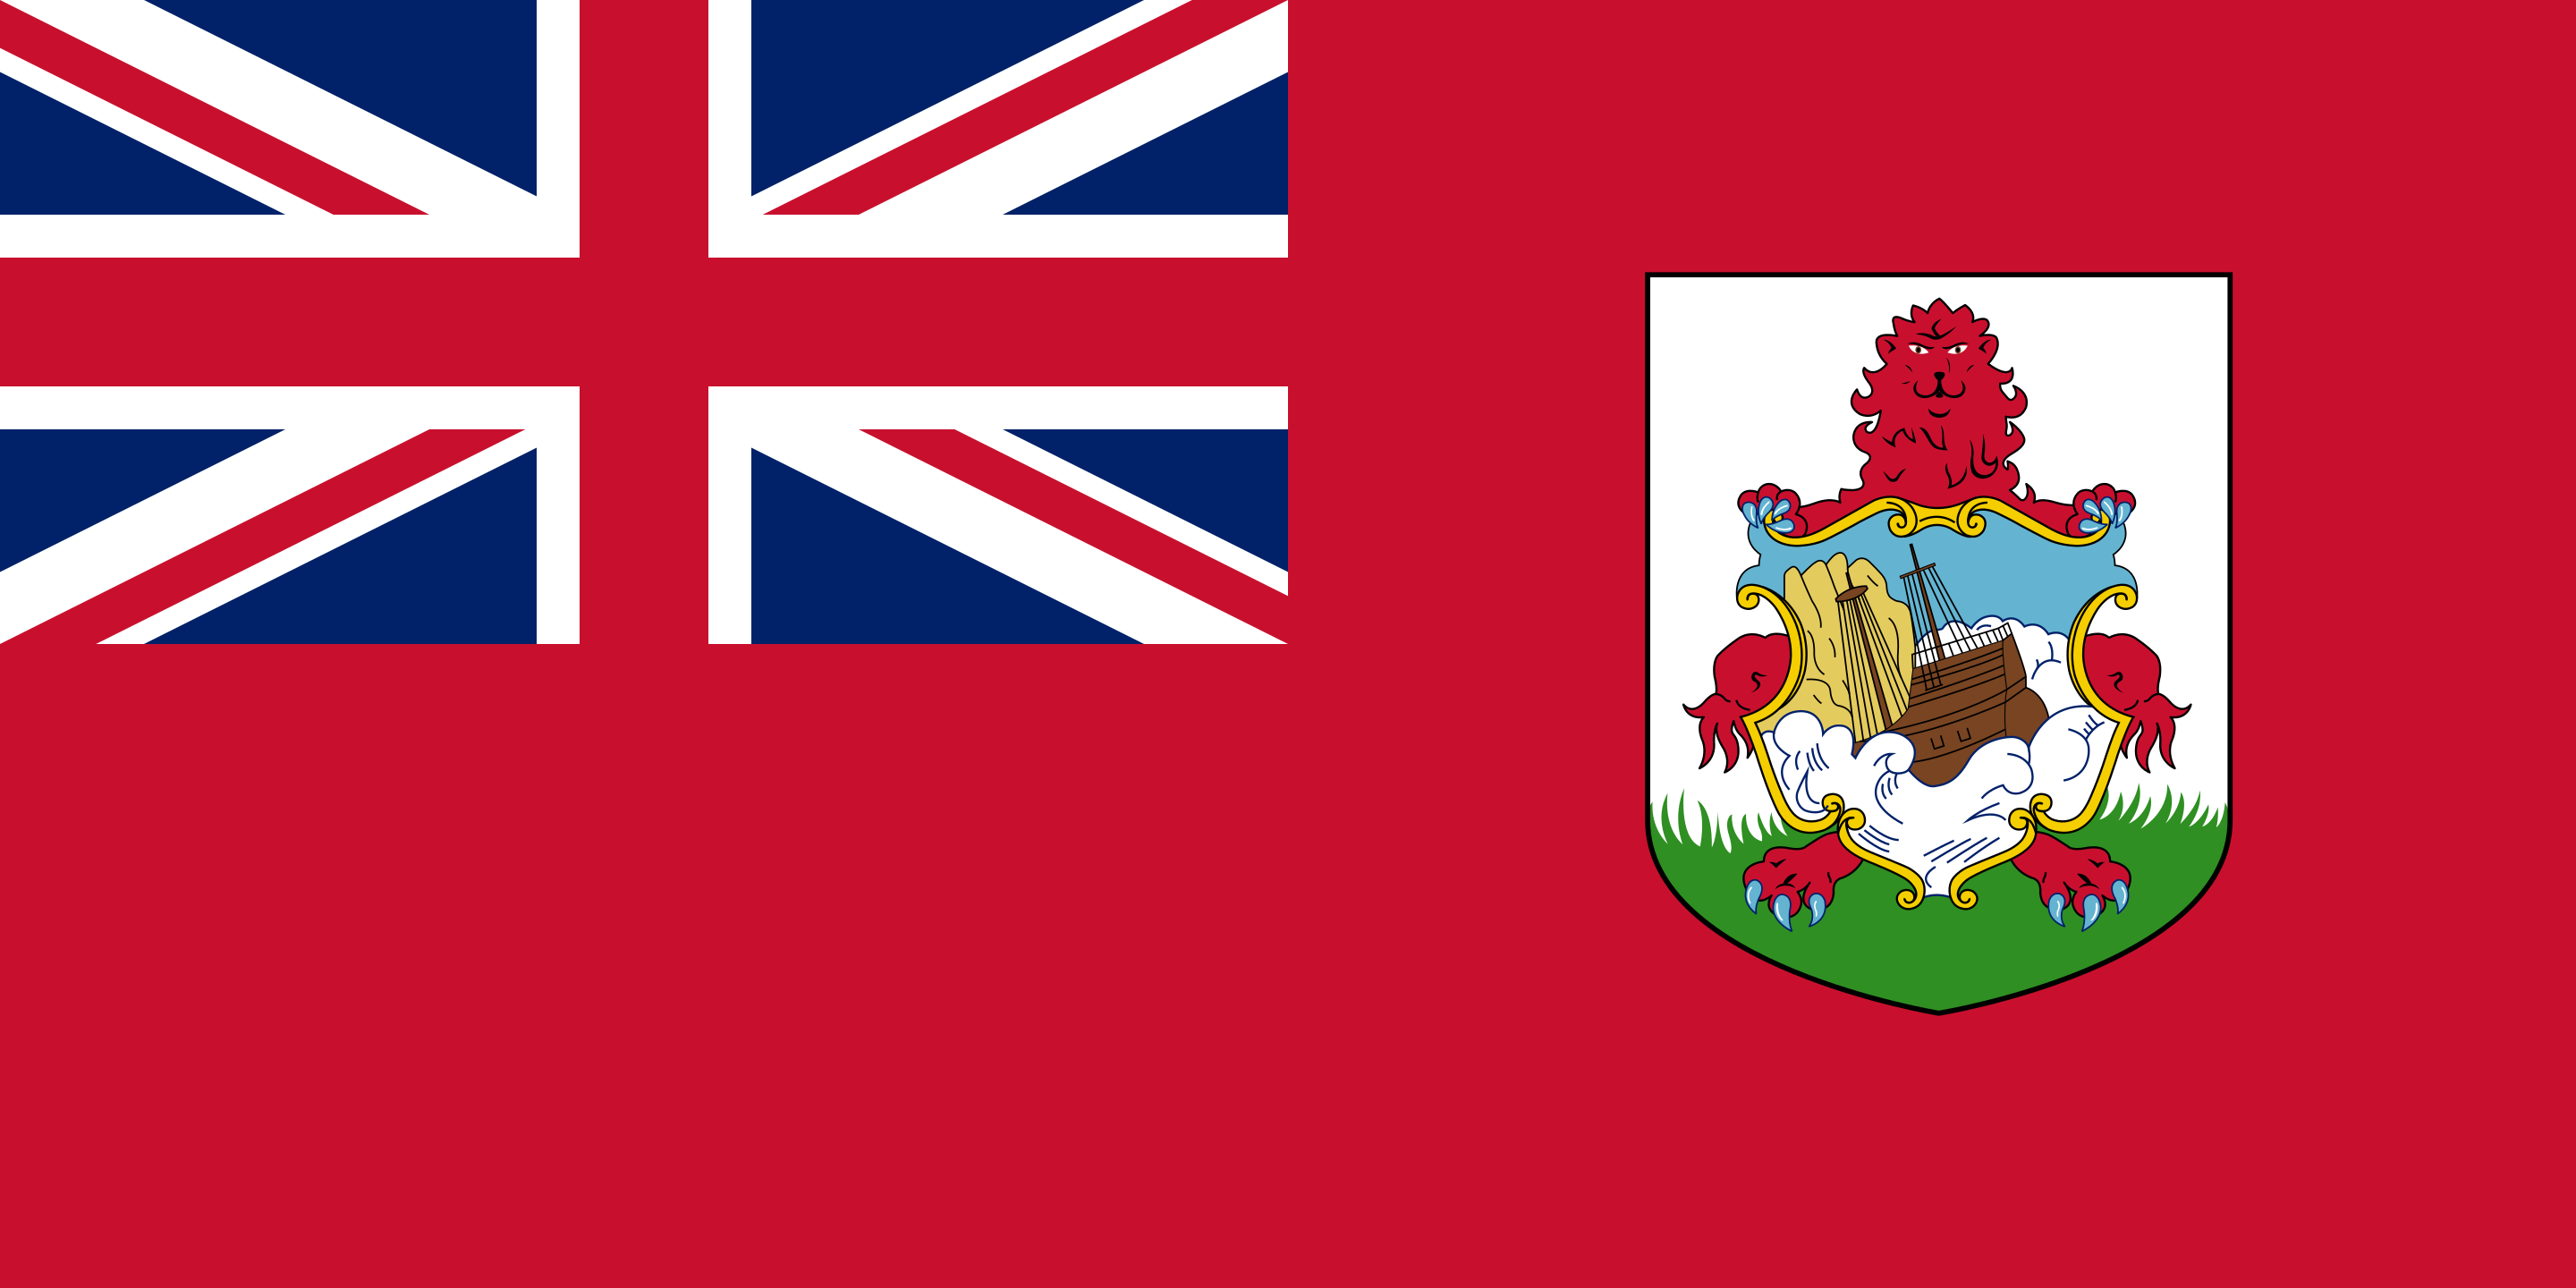 Bermudianska flaggan